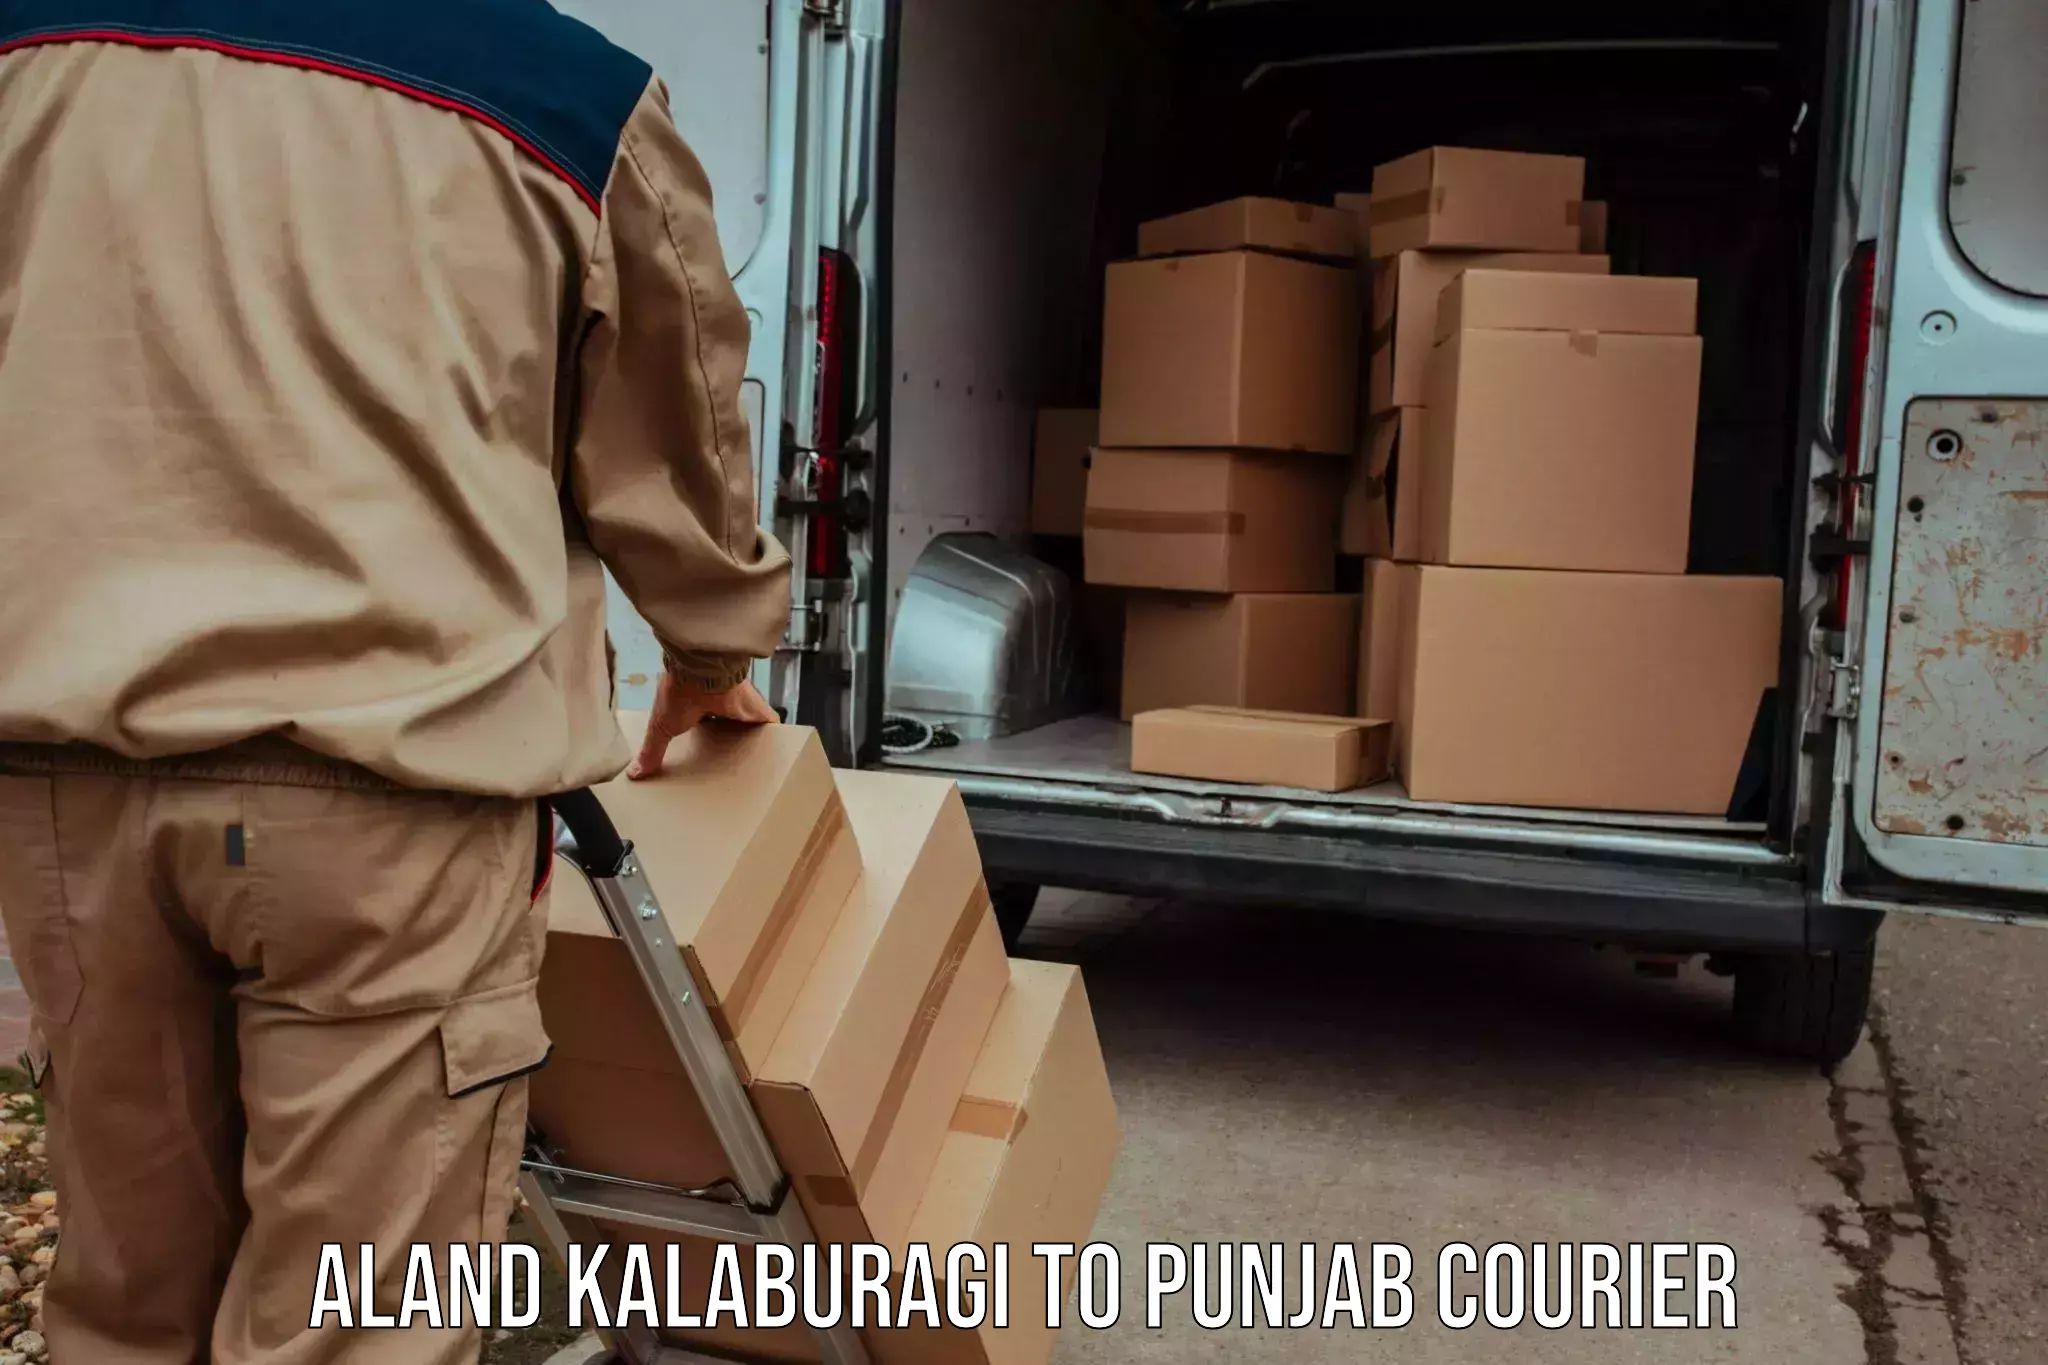 24-hour courier services Aland Kalaburagi to Tarsikka